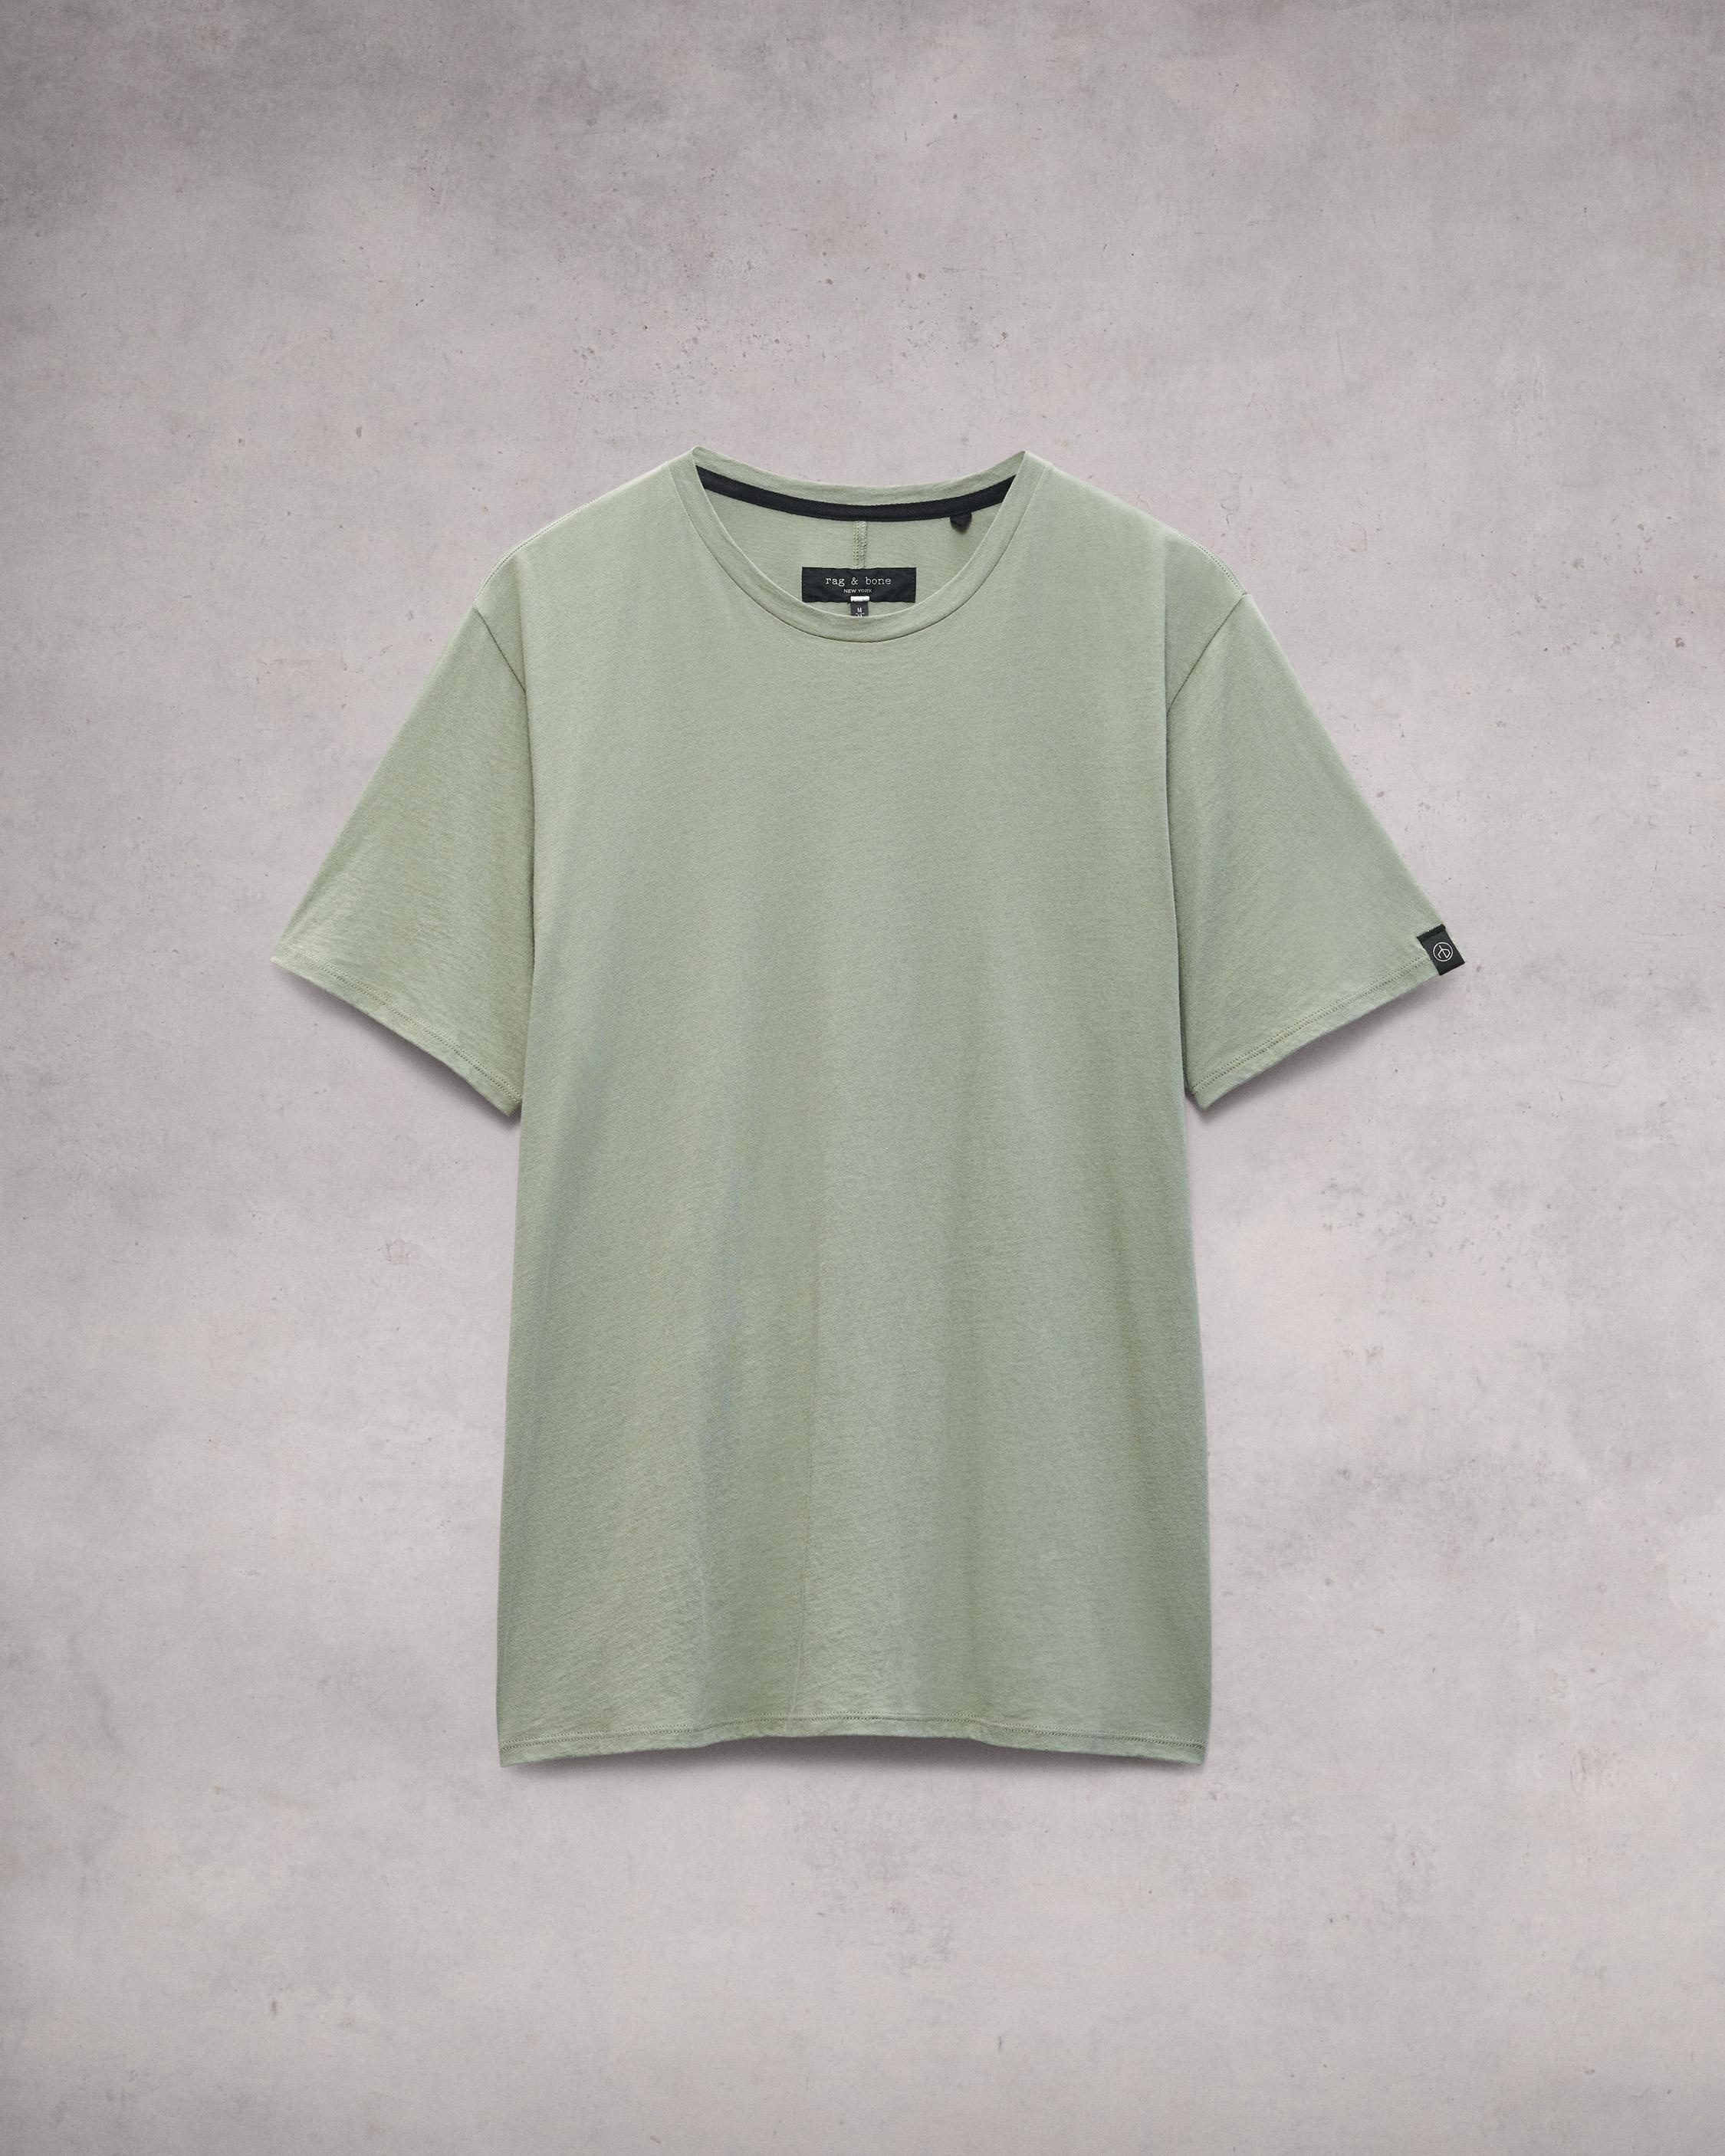 Zero Gravity Classic Tee
Cotton T-Shirt - 1